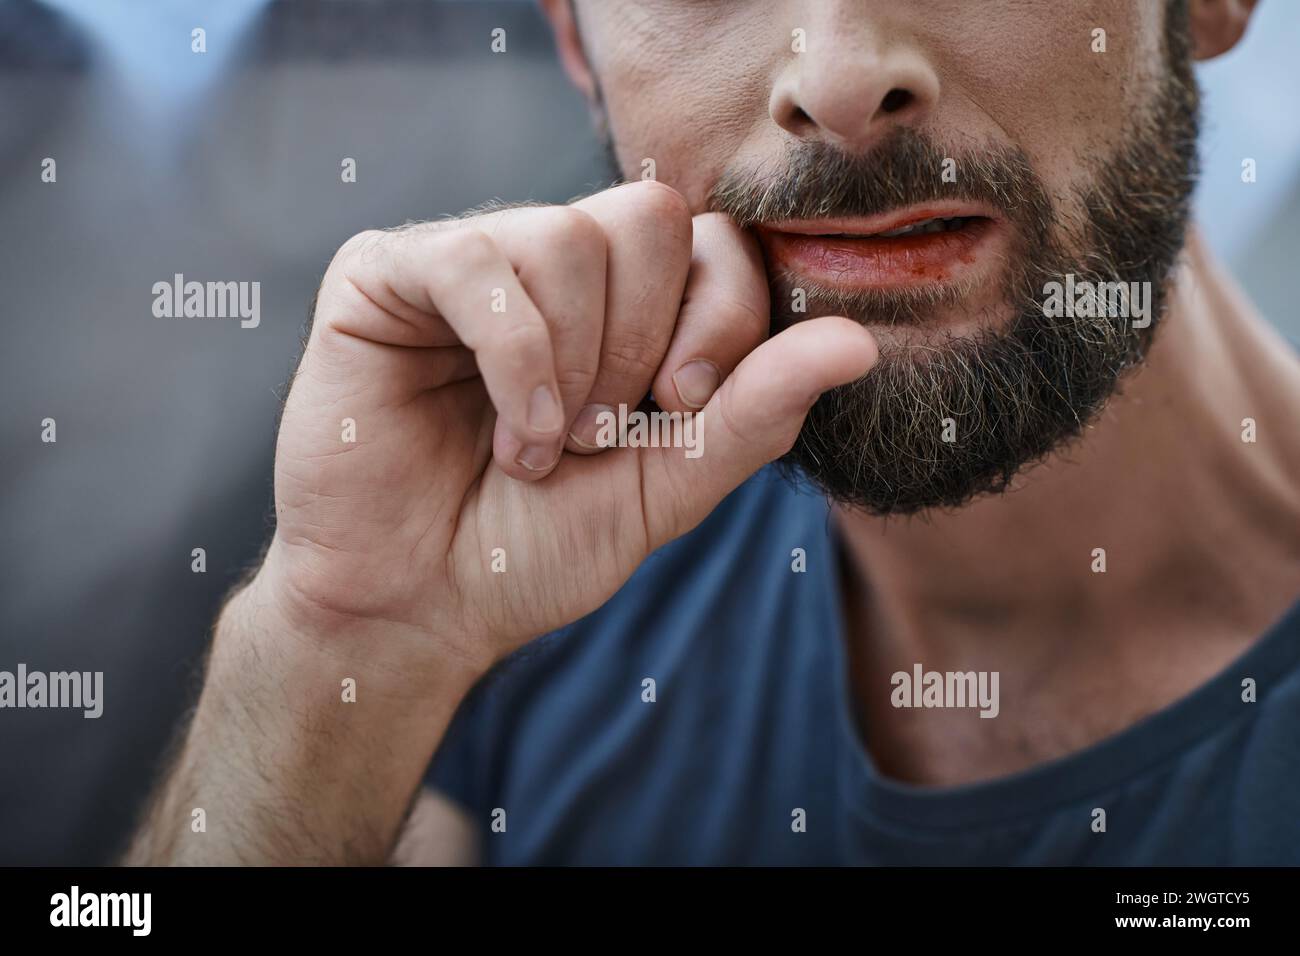 Zugeschnittene Ansicht eines ängstlichen Mannes mit Bart, der während einer depressiven Episode auf die Lippen beißt Stockfoto